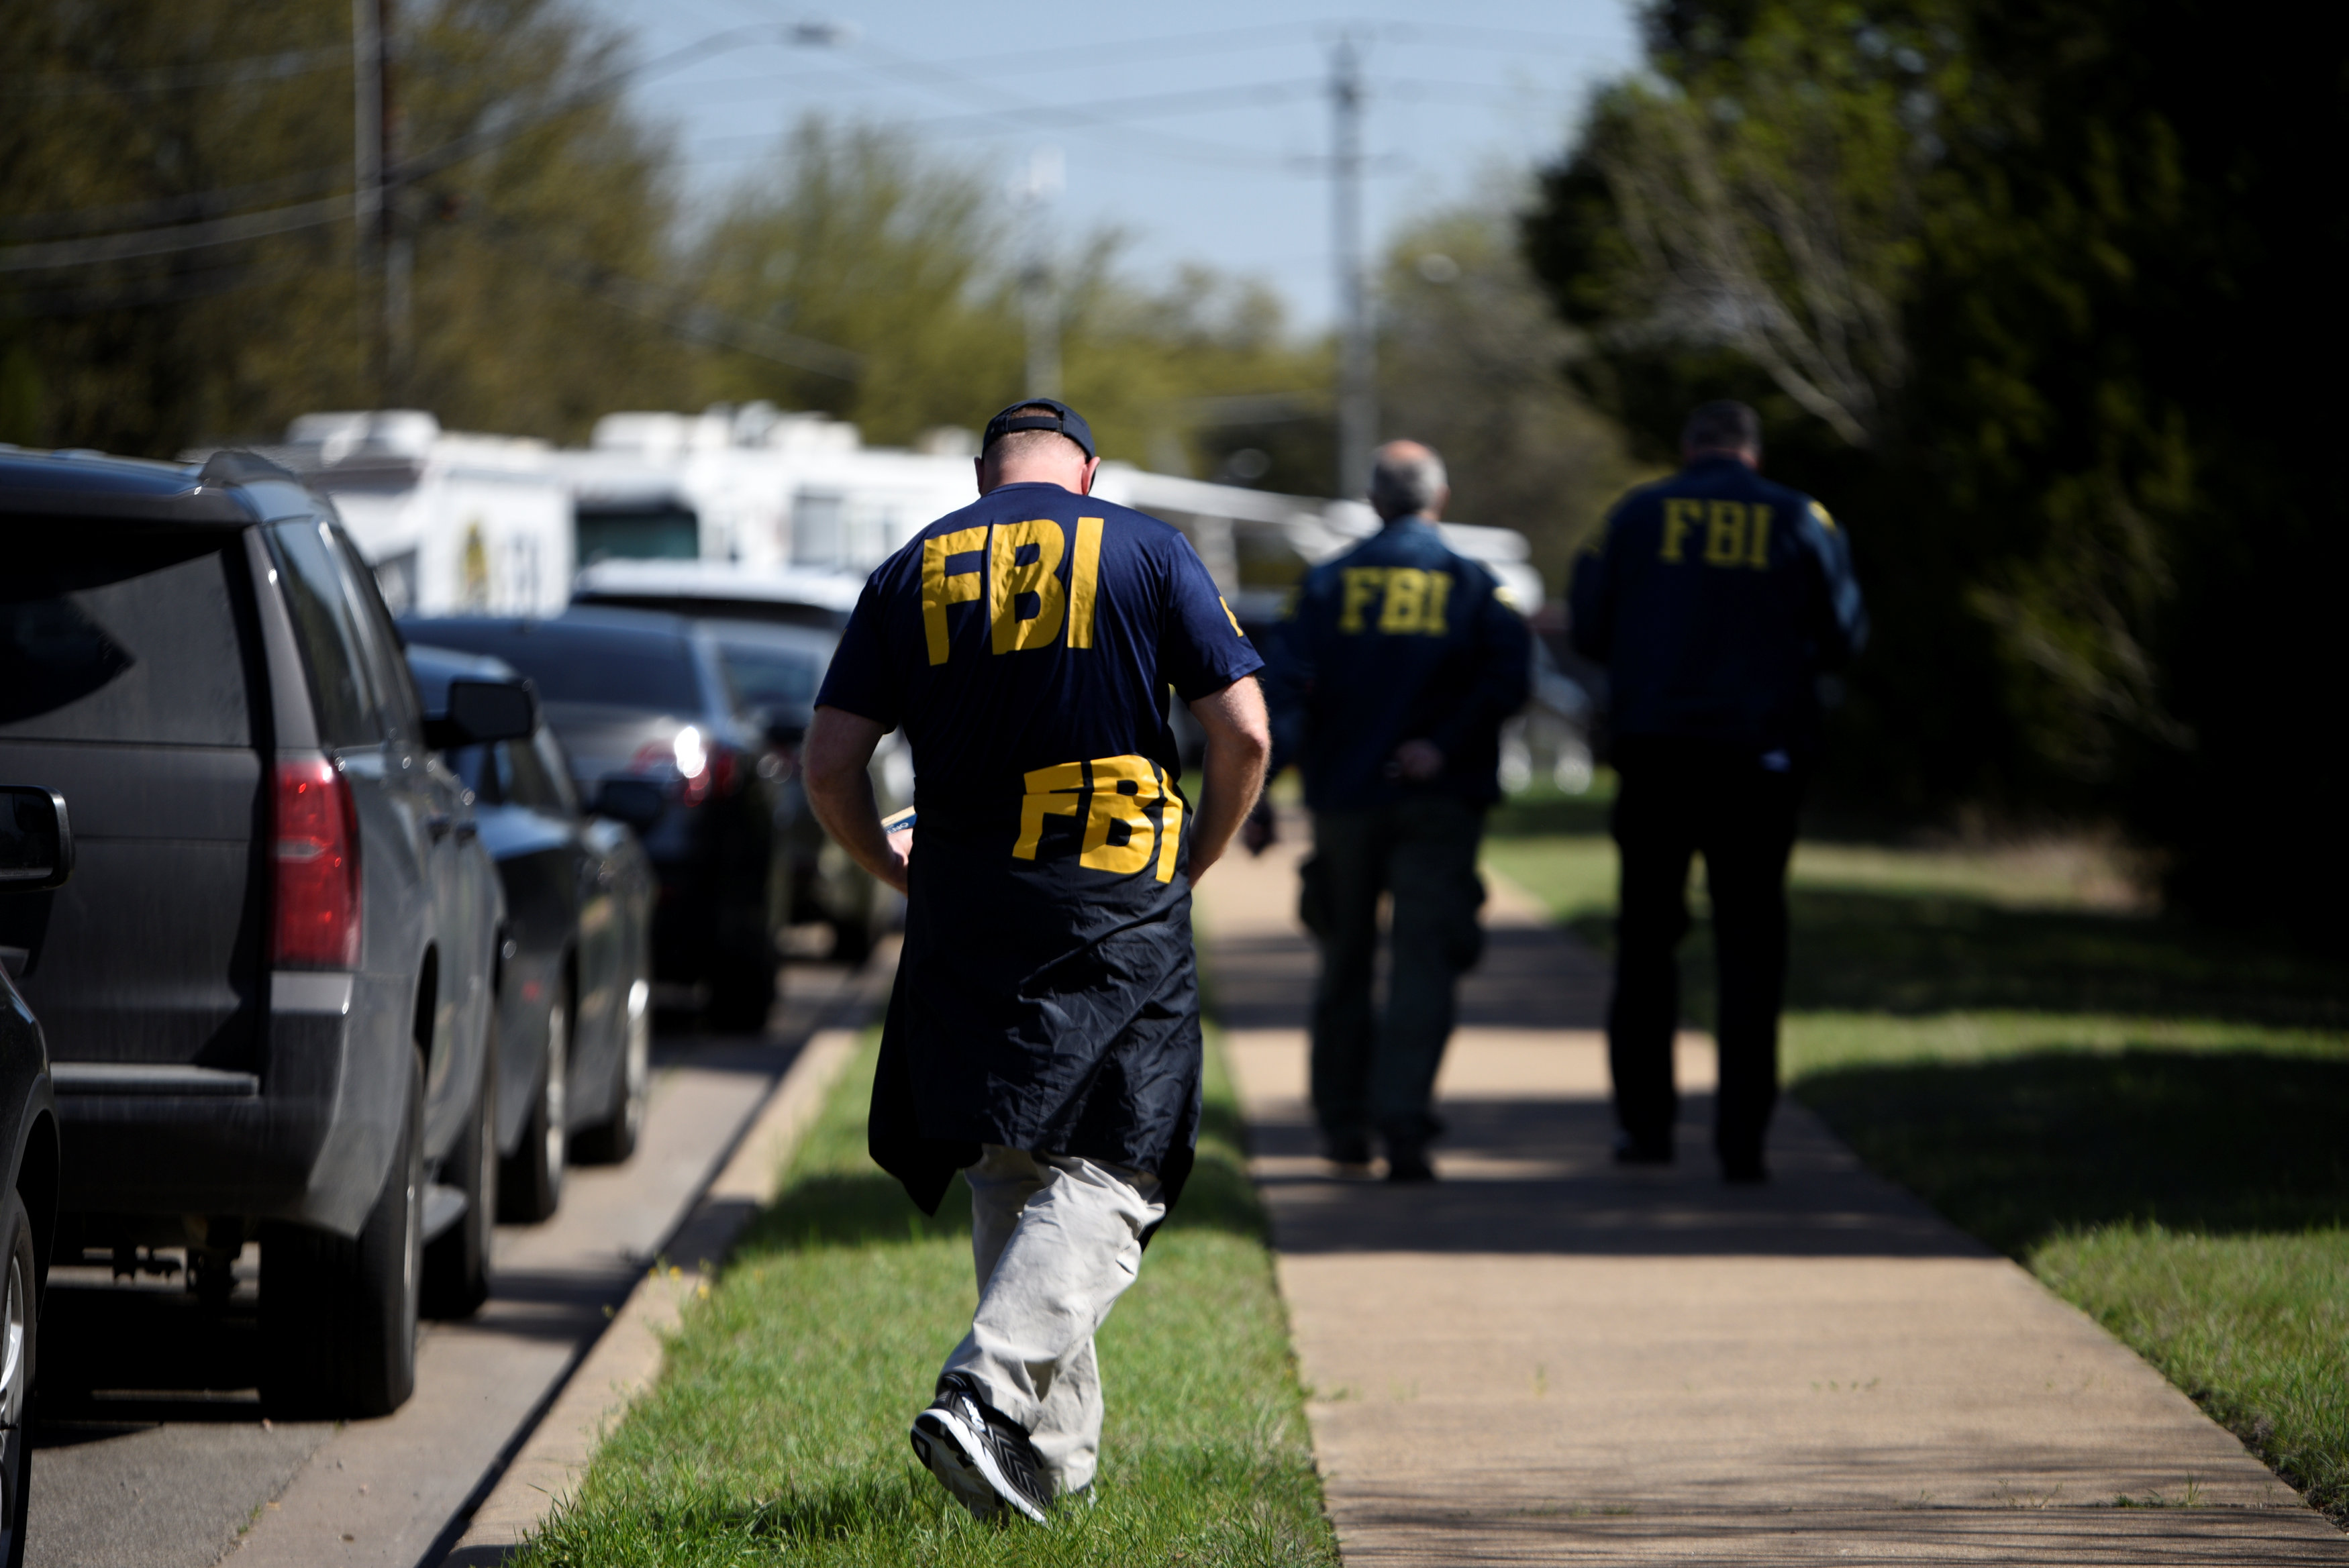 Policía de EEUU busca atacante serial tras cinco bombas en Texas